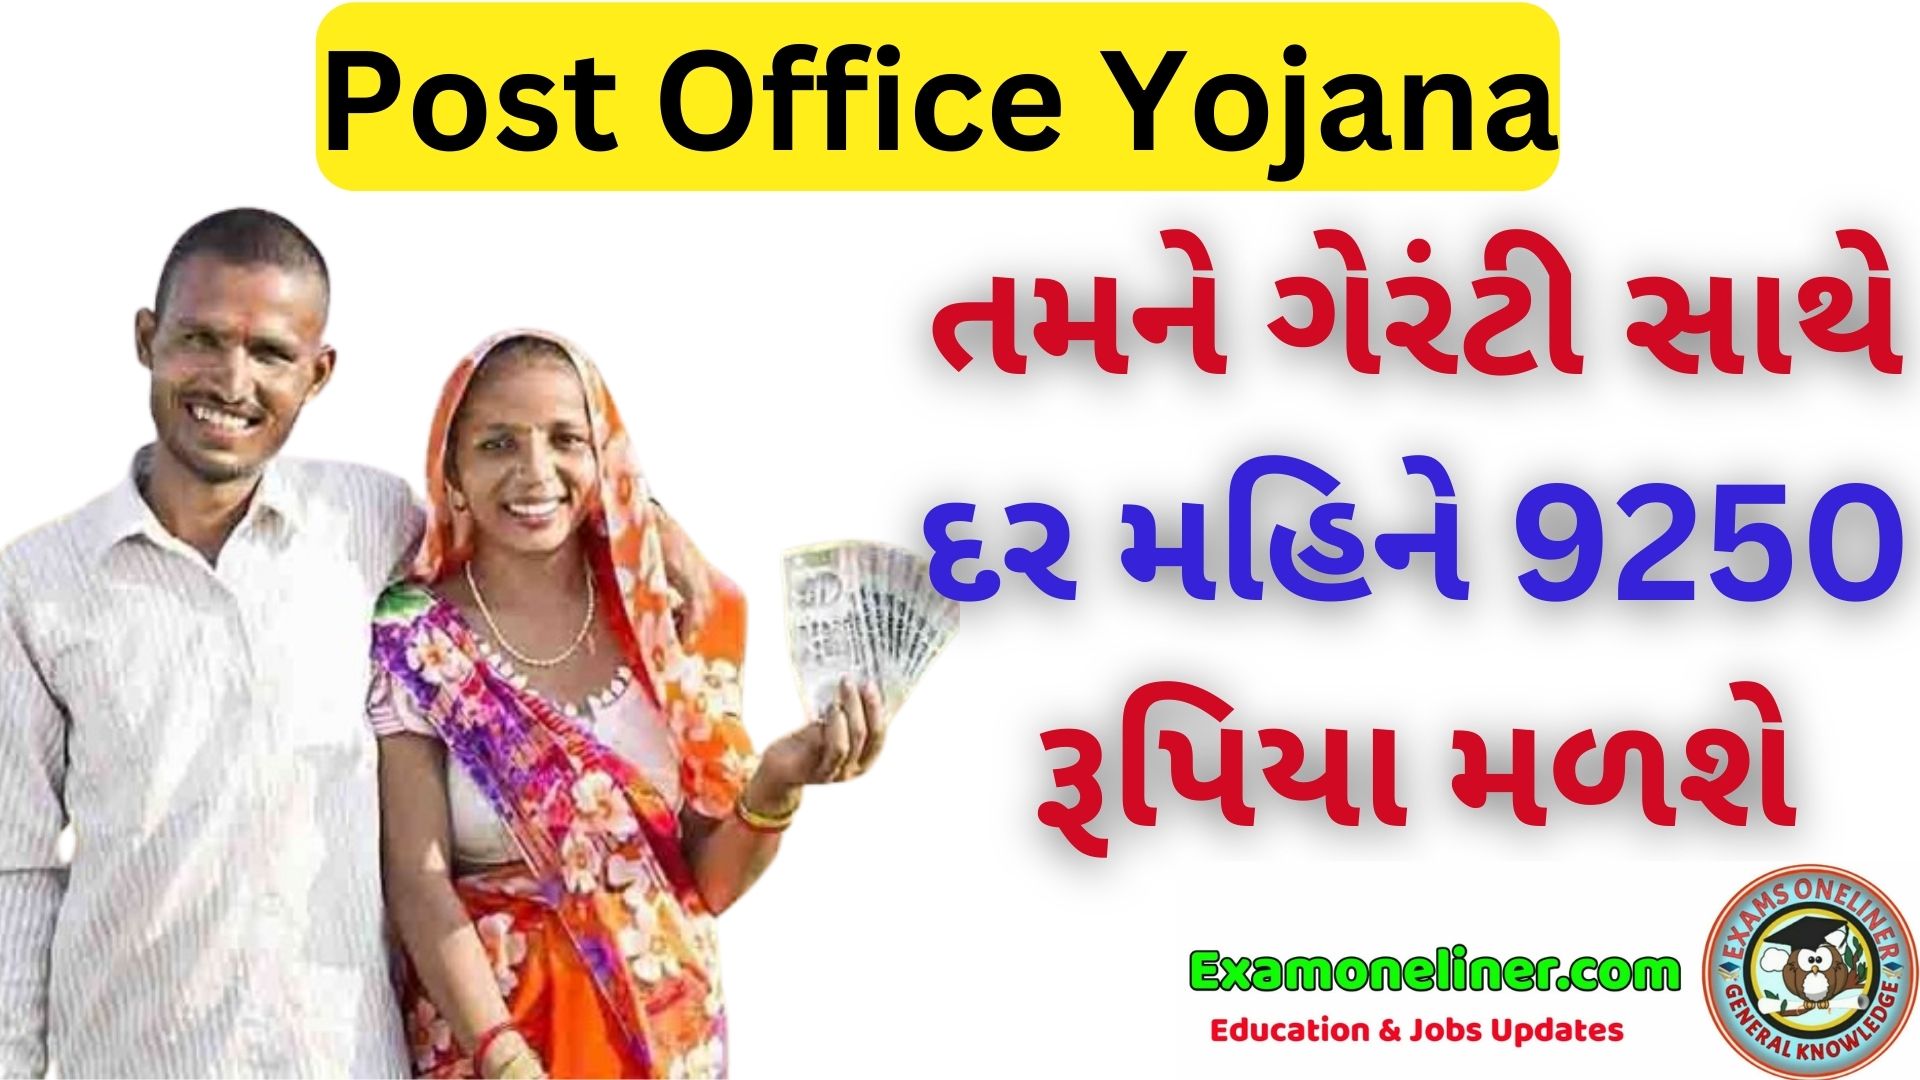 Post Office Yojana: આ ખાતું તમારી પત્નીના નામે ખોલો તમને દર મહિને 9250 રૂપિયા મળશે